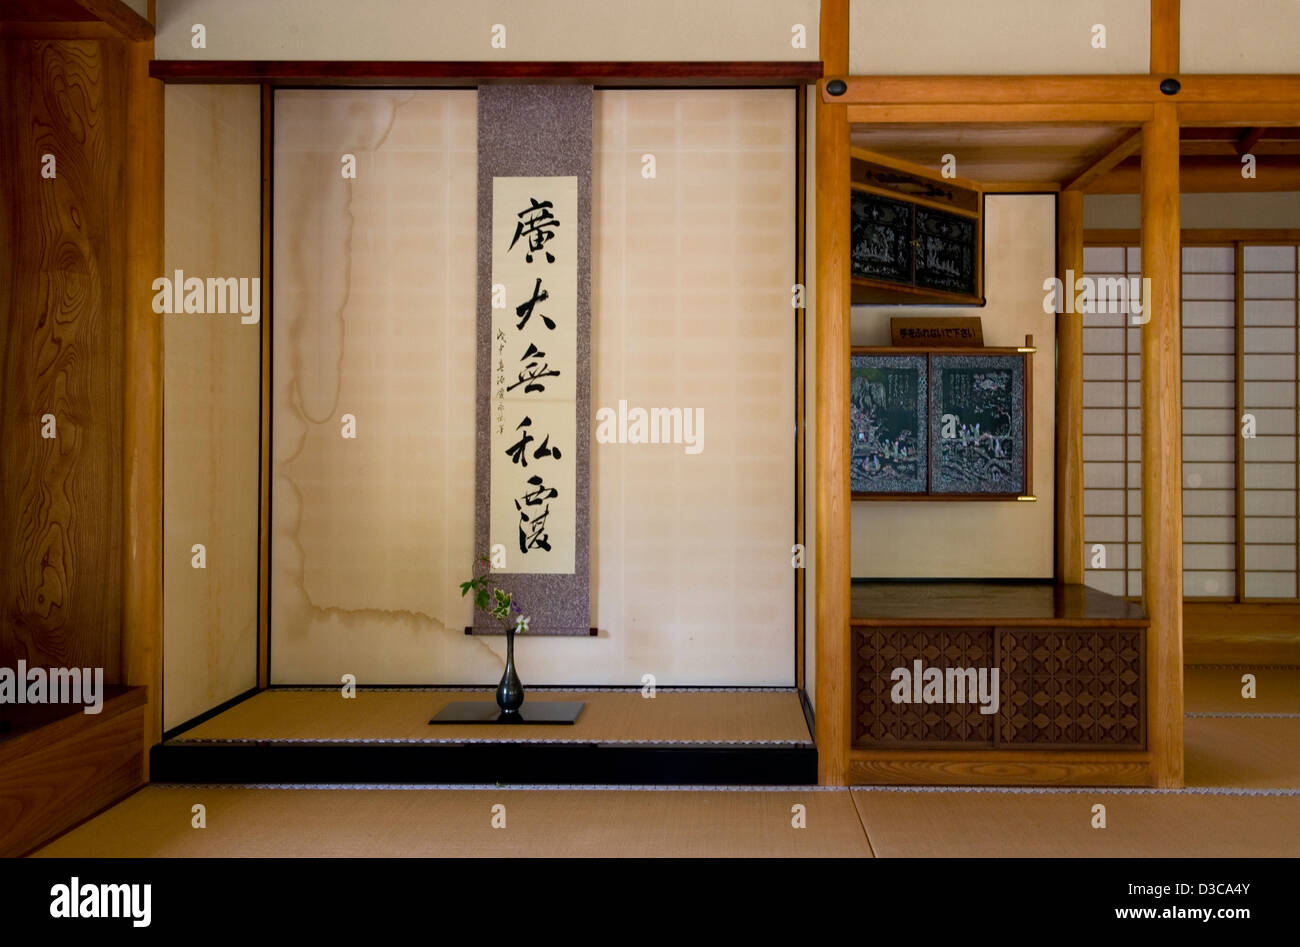 Diseño de suelo de tatami japonés